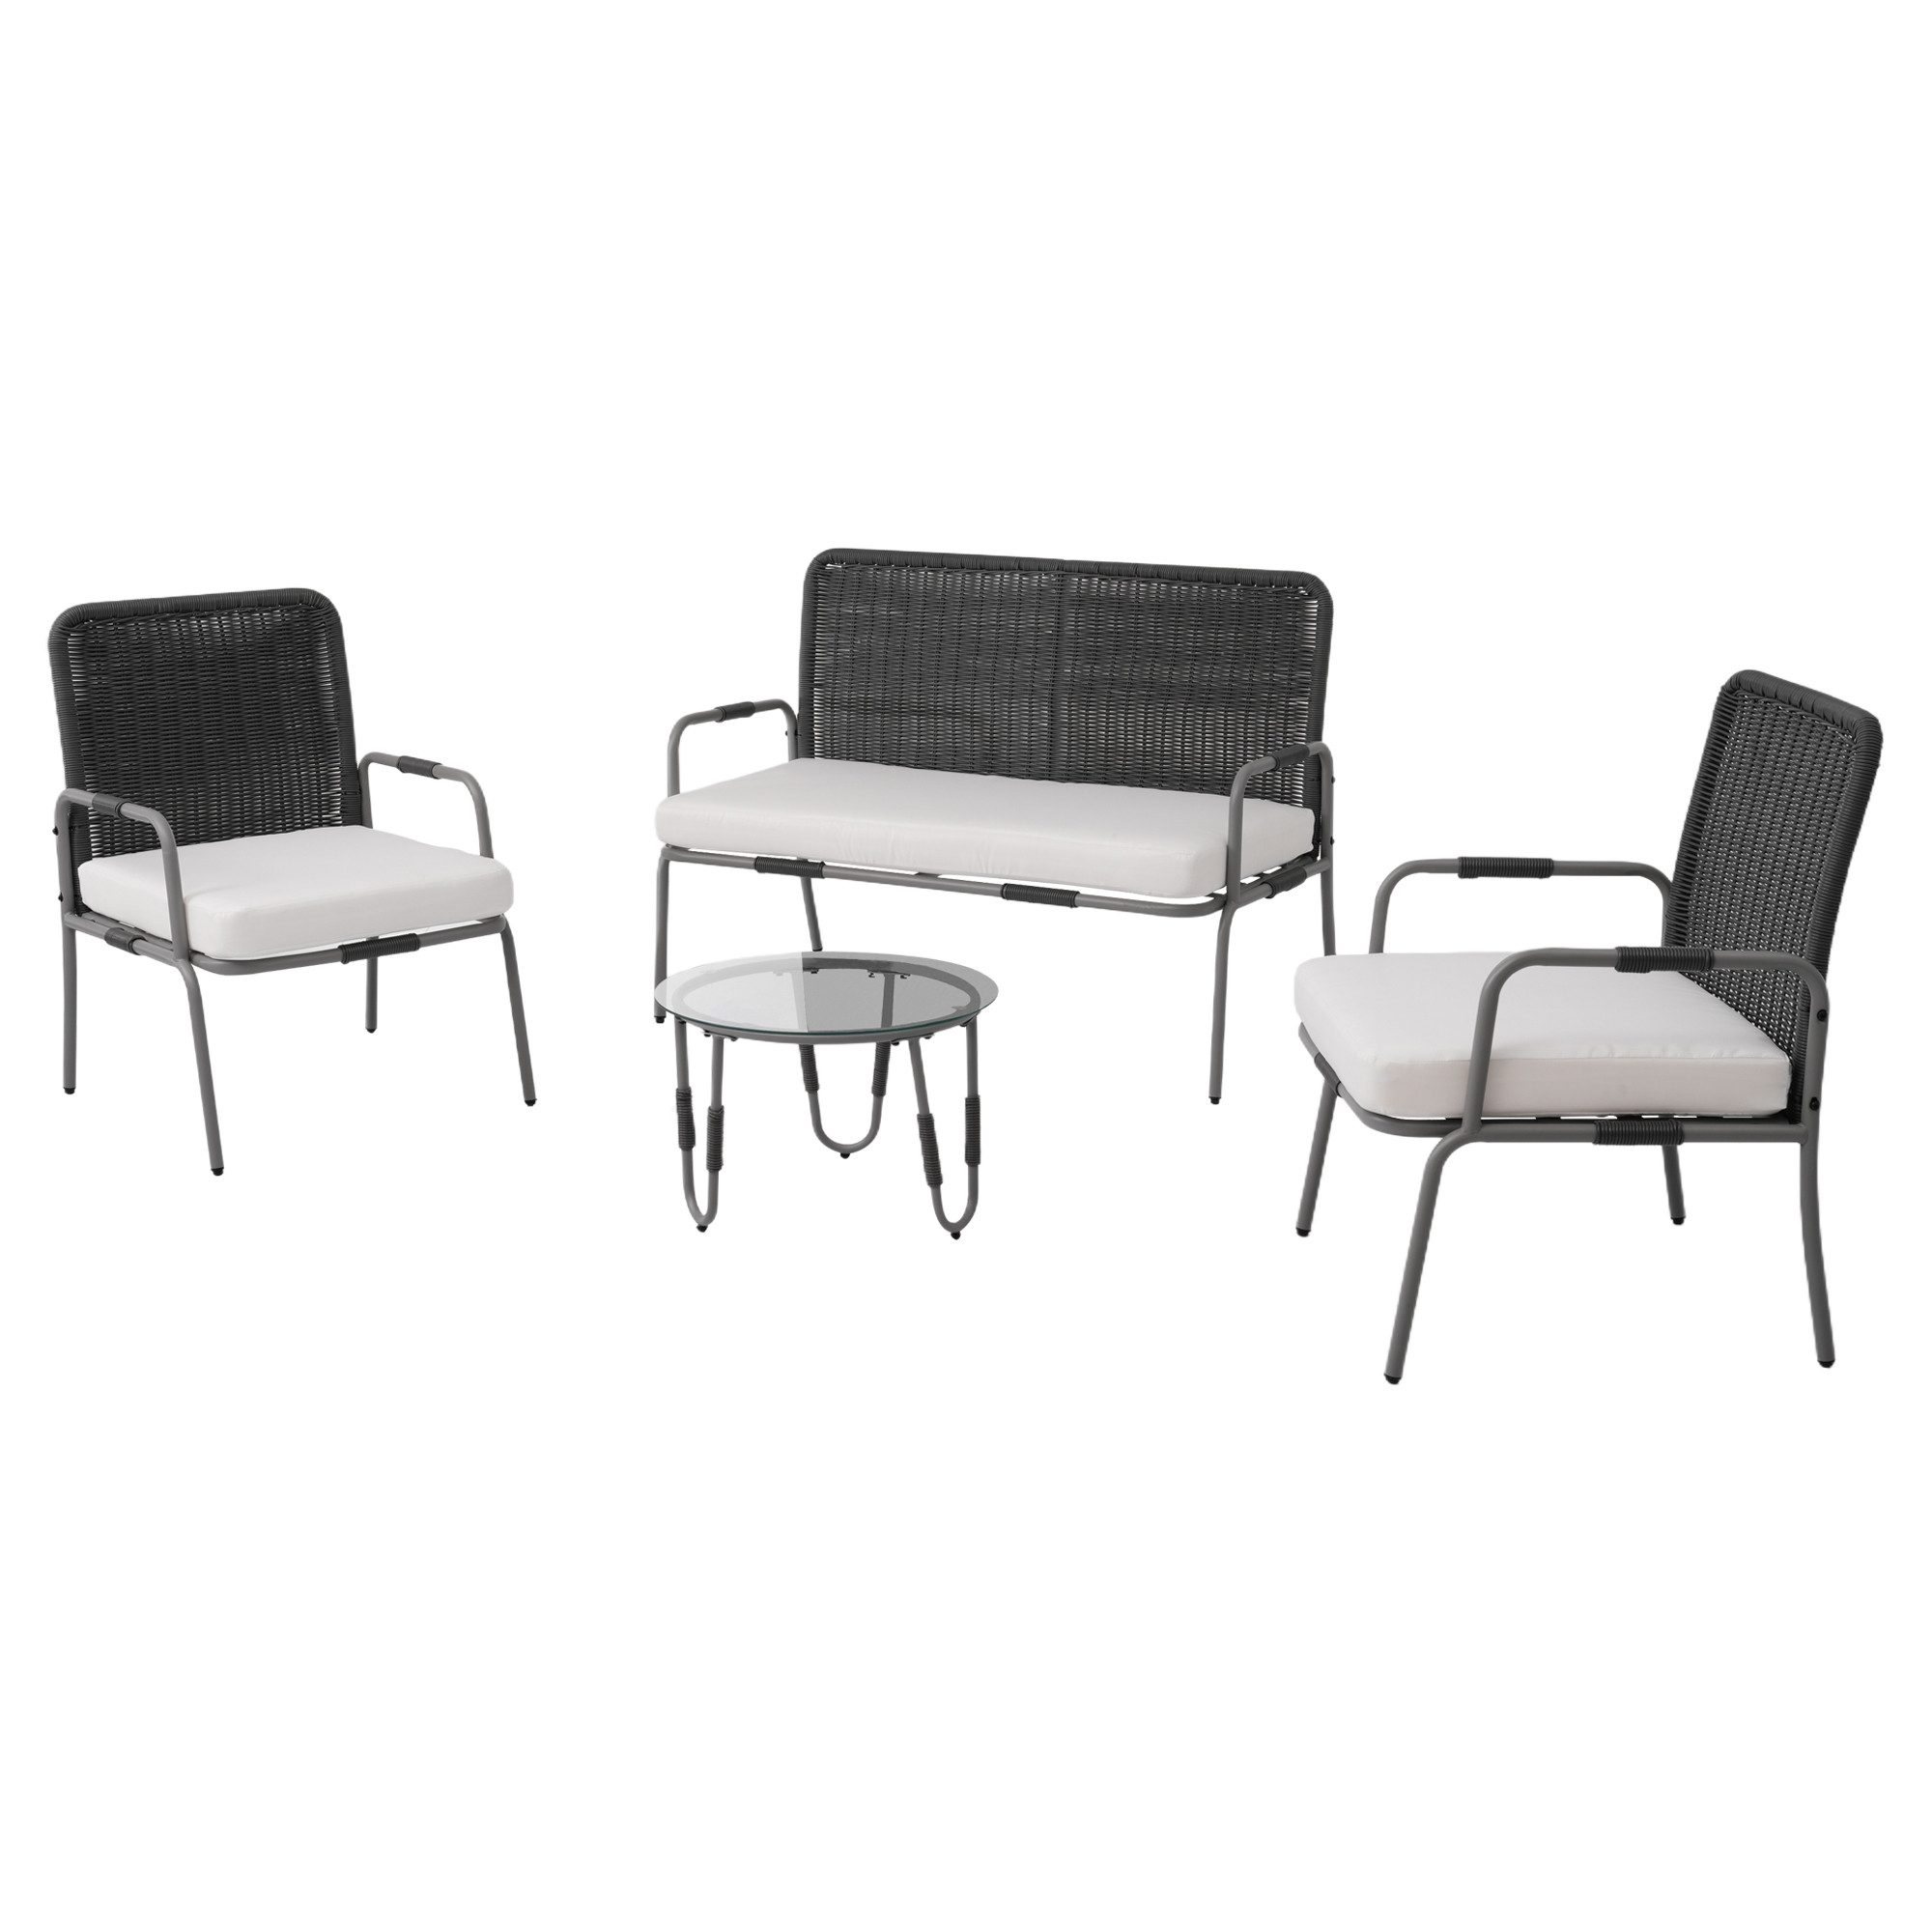 DOPWii Loungeset Rattansitz Sitzgruppe,Gartenmöbel Sitzgarnitur Garnitur Set mit Sessel, Couchtisch & Kissen,Abnehmbarer,Waschbarer Stoffbezug,für 4 Personen